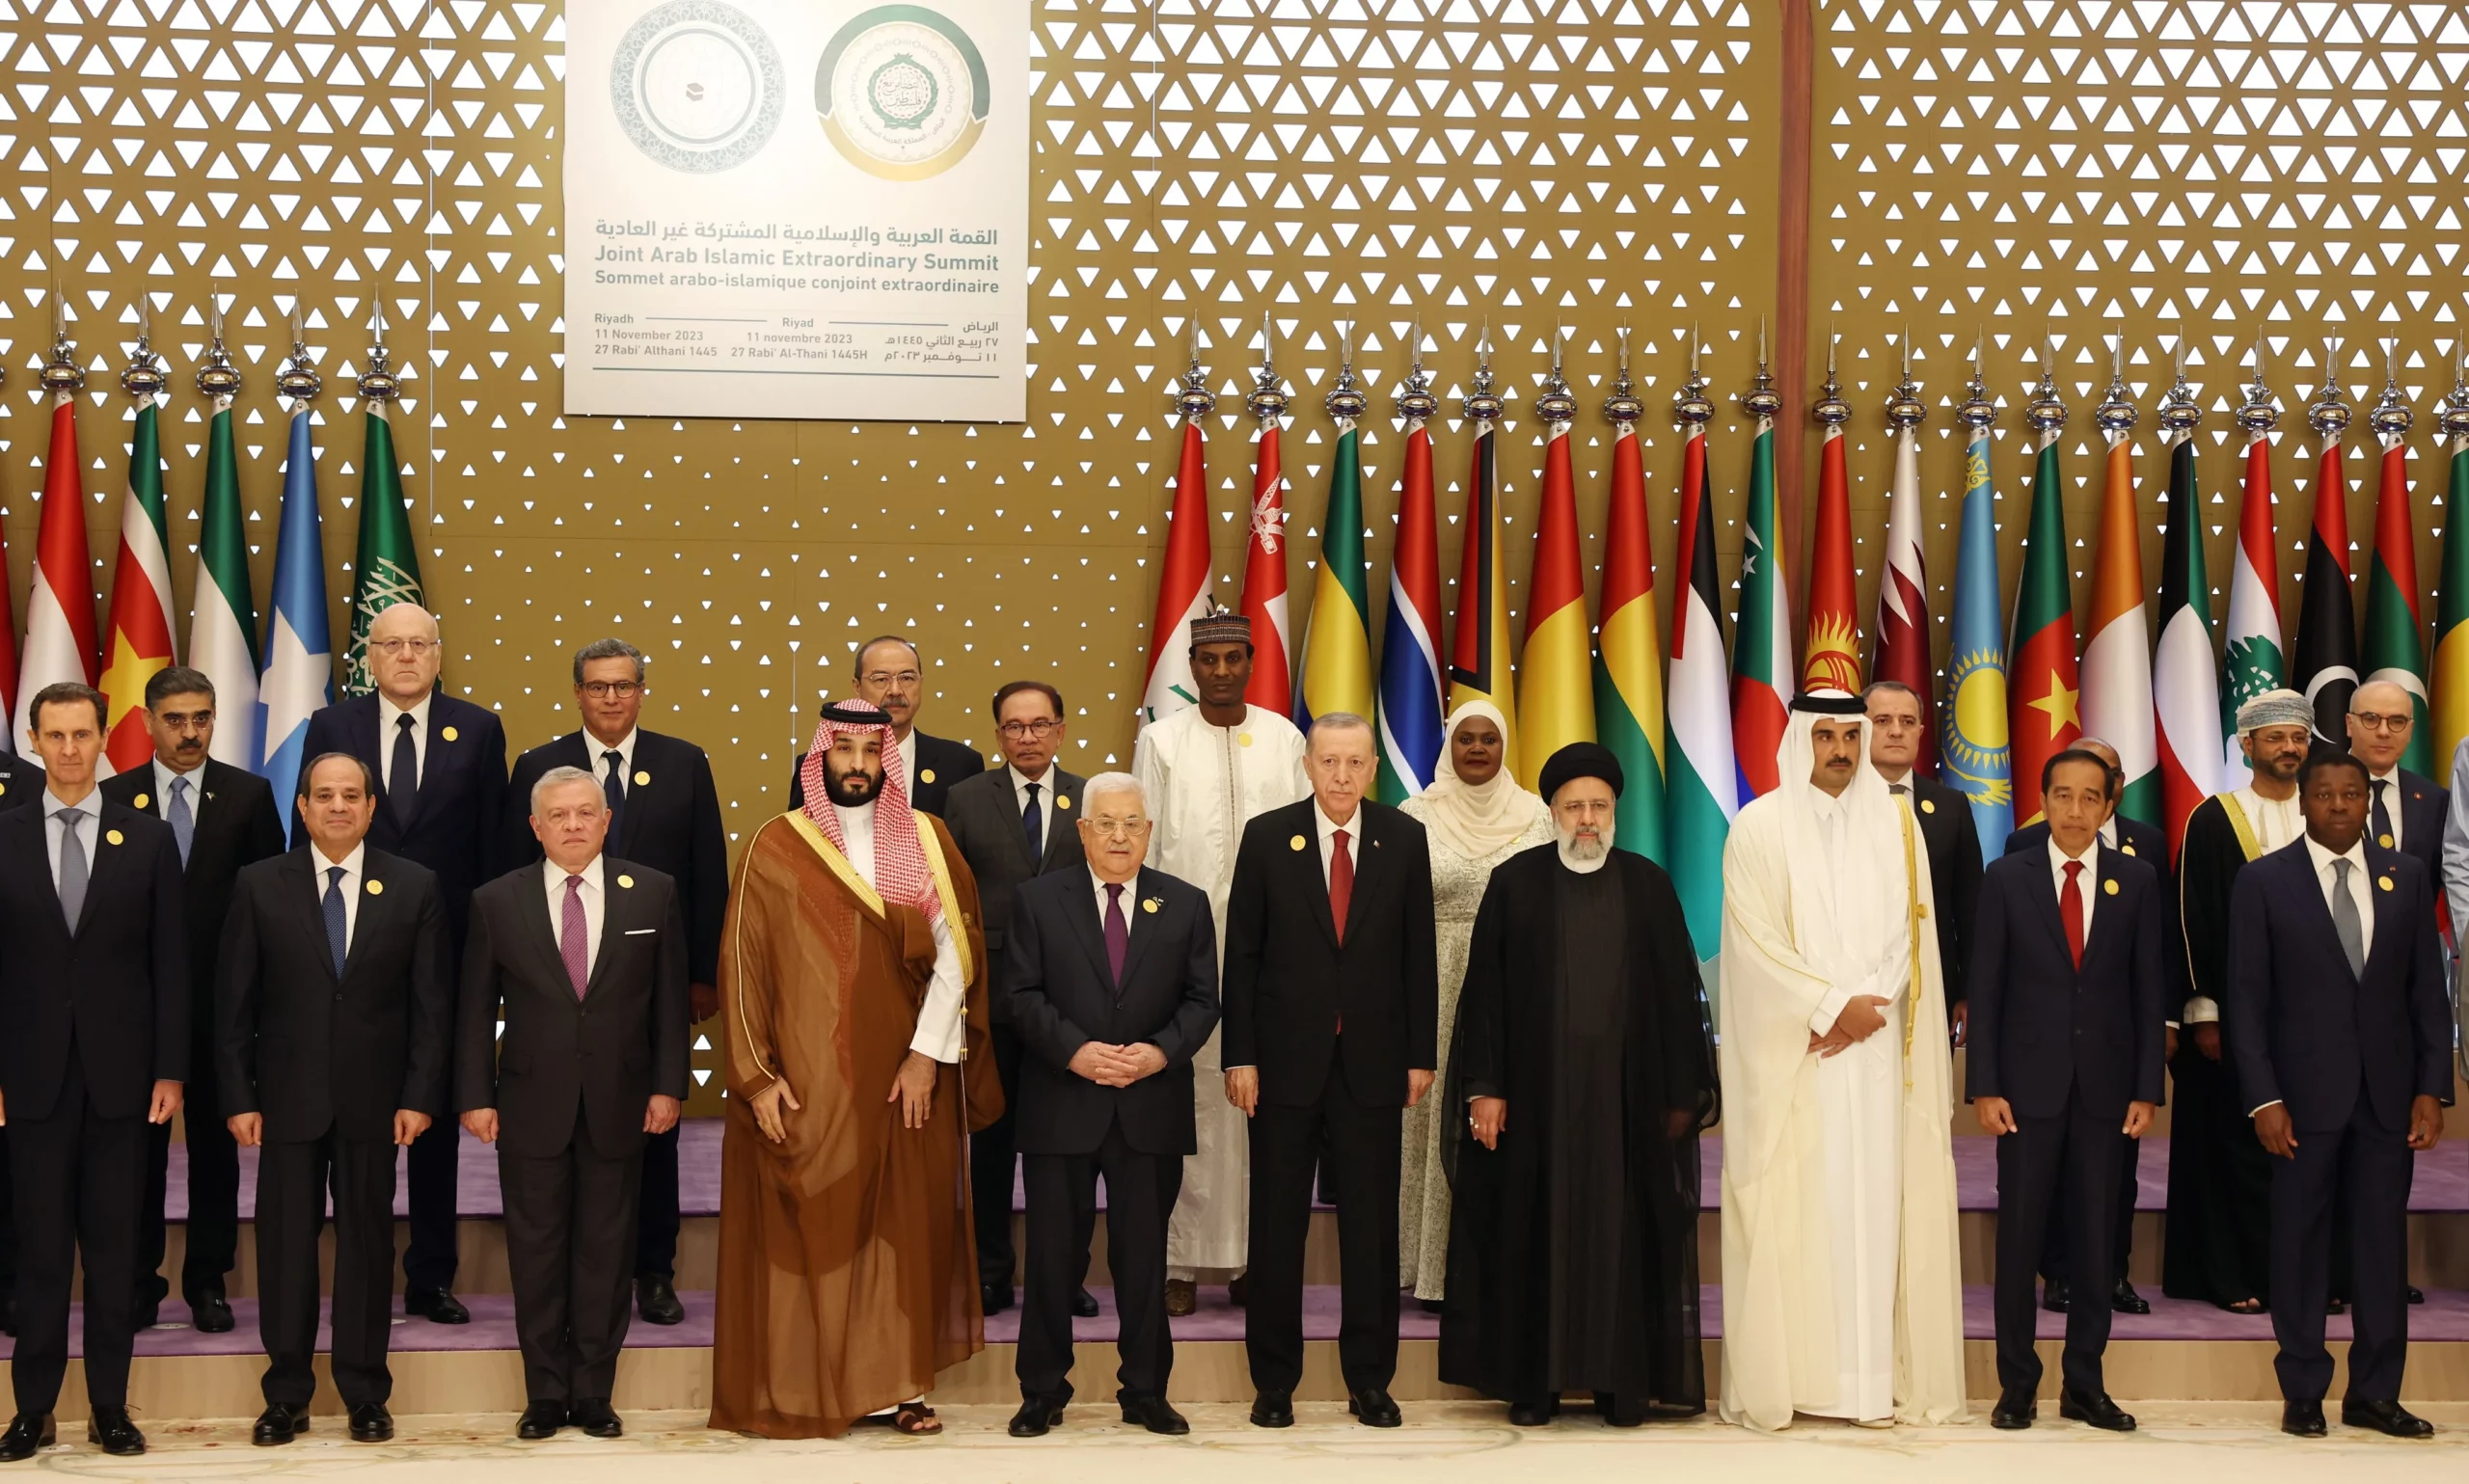 Middle East Leaders Lambast Israel At Saudi Summit On Gaza